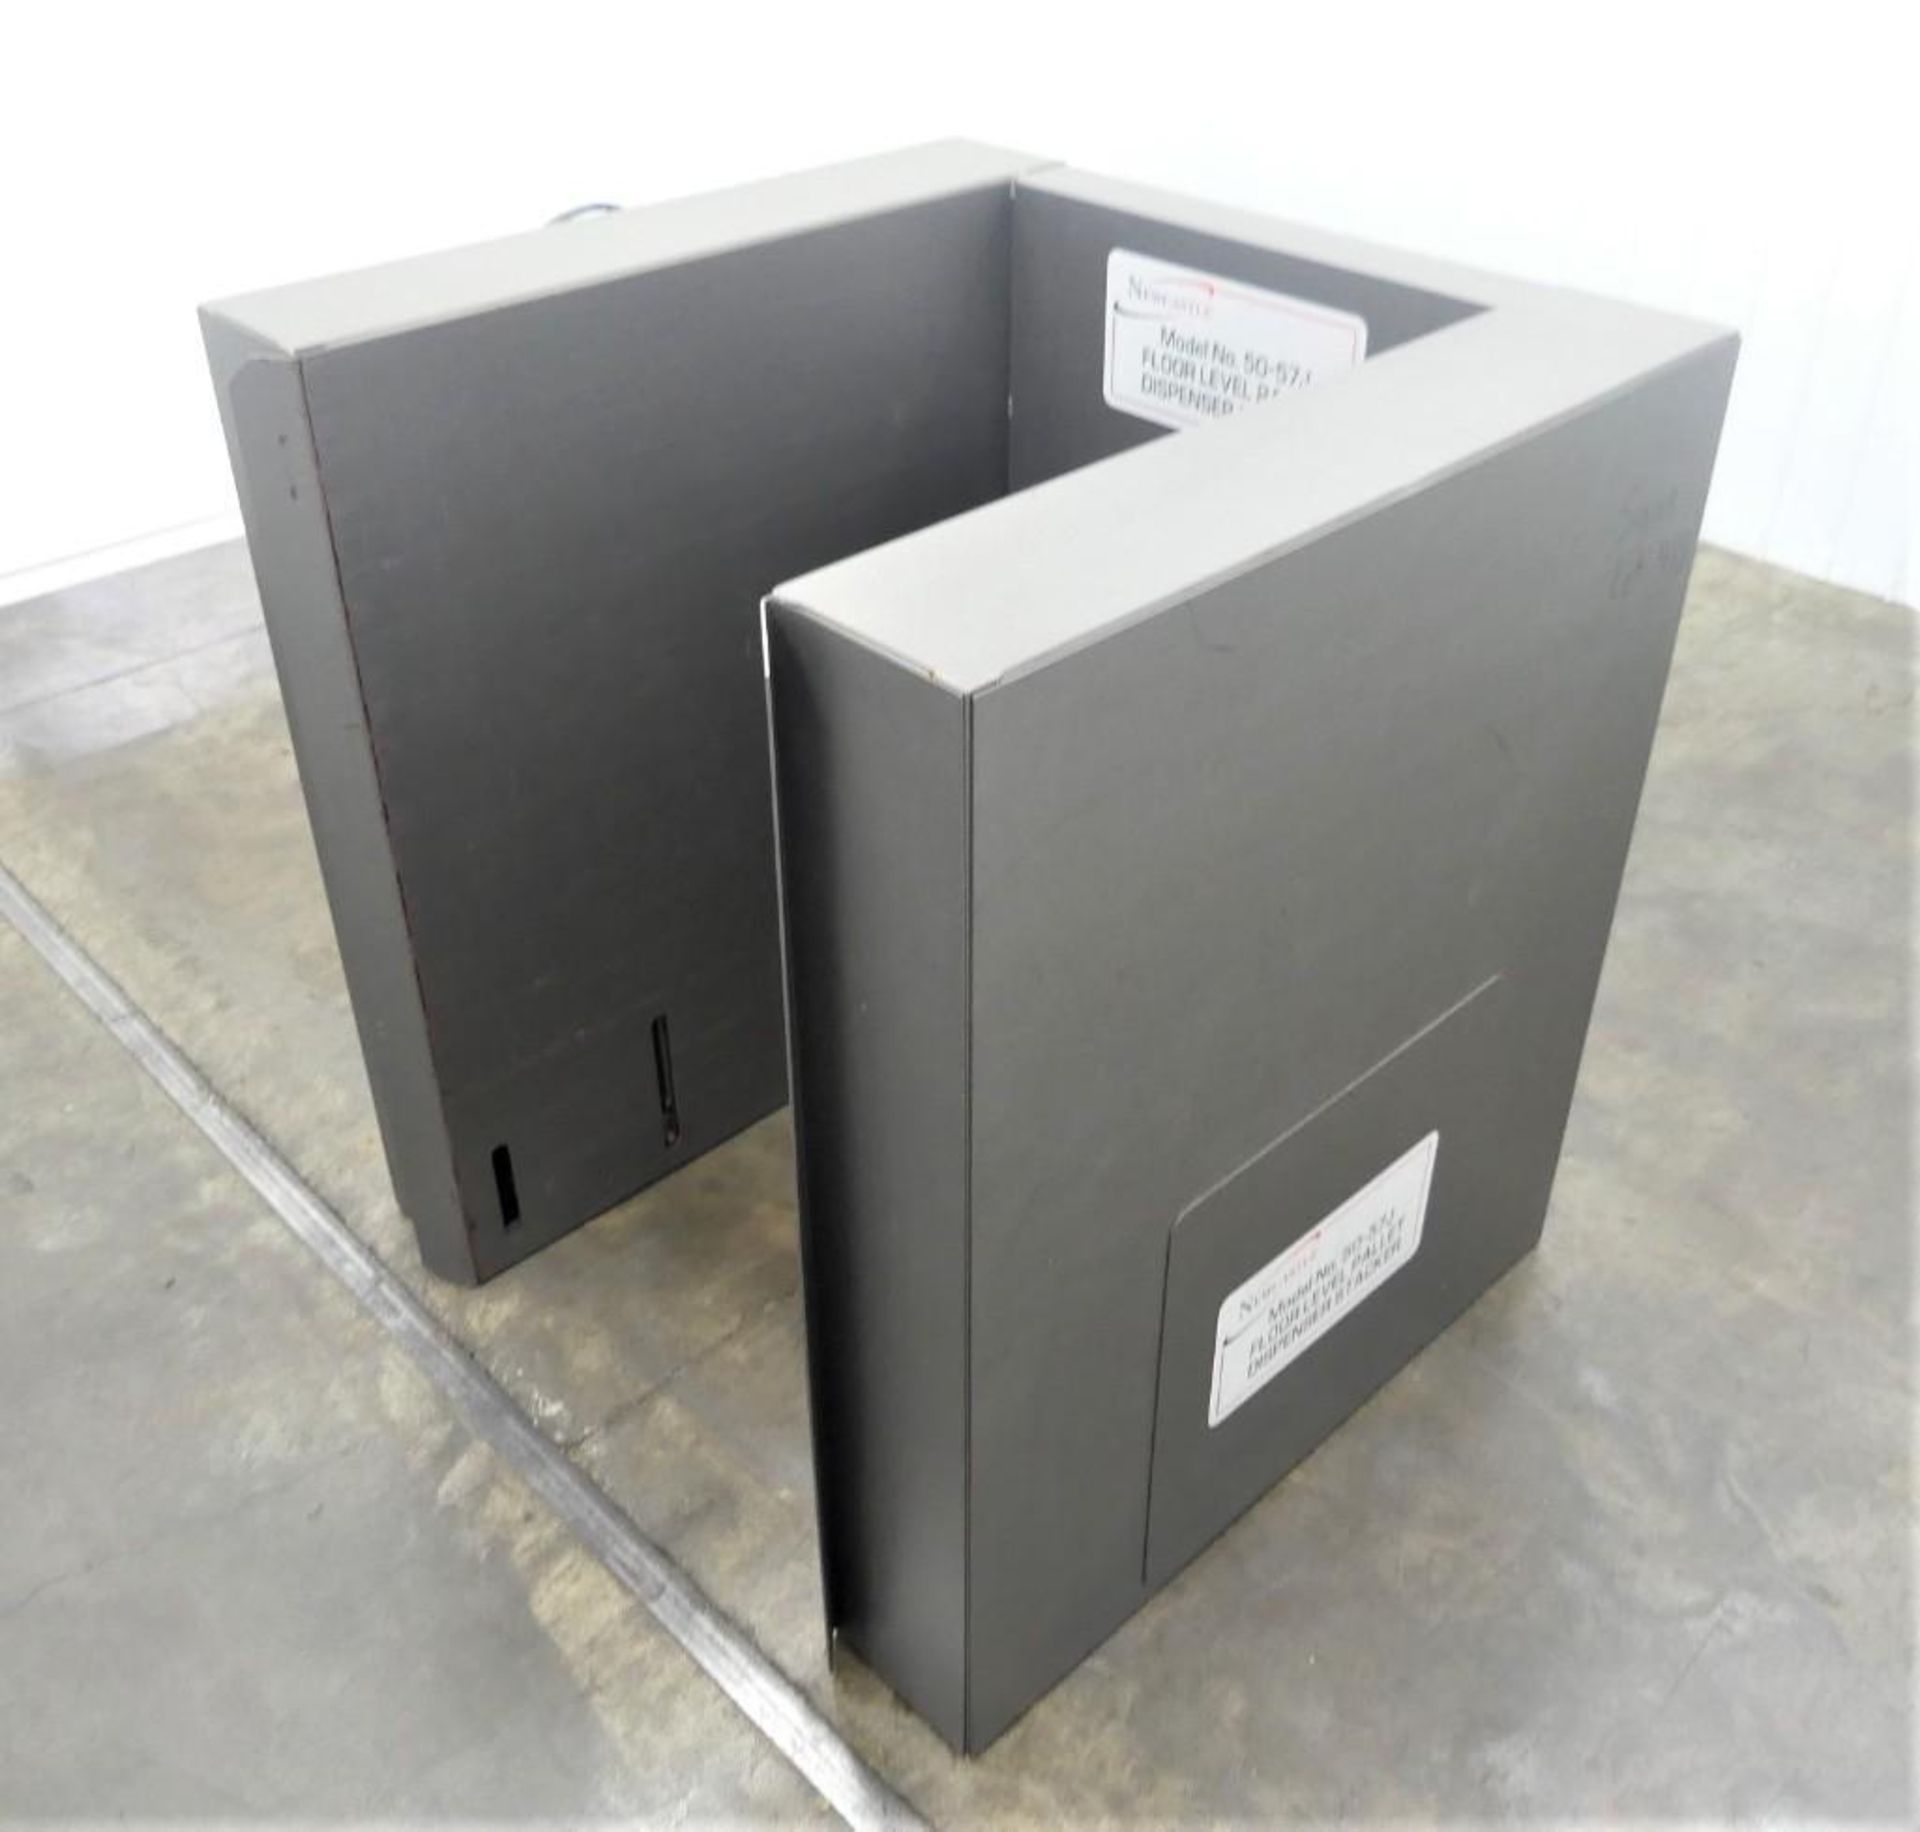 Newcastle 50-57 J Floor Level Pallet Dispenser Stacker - Image 3 of 8